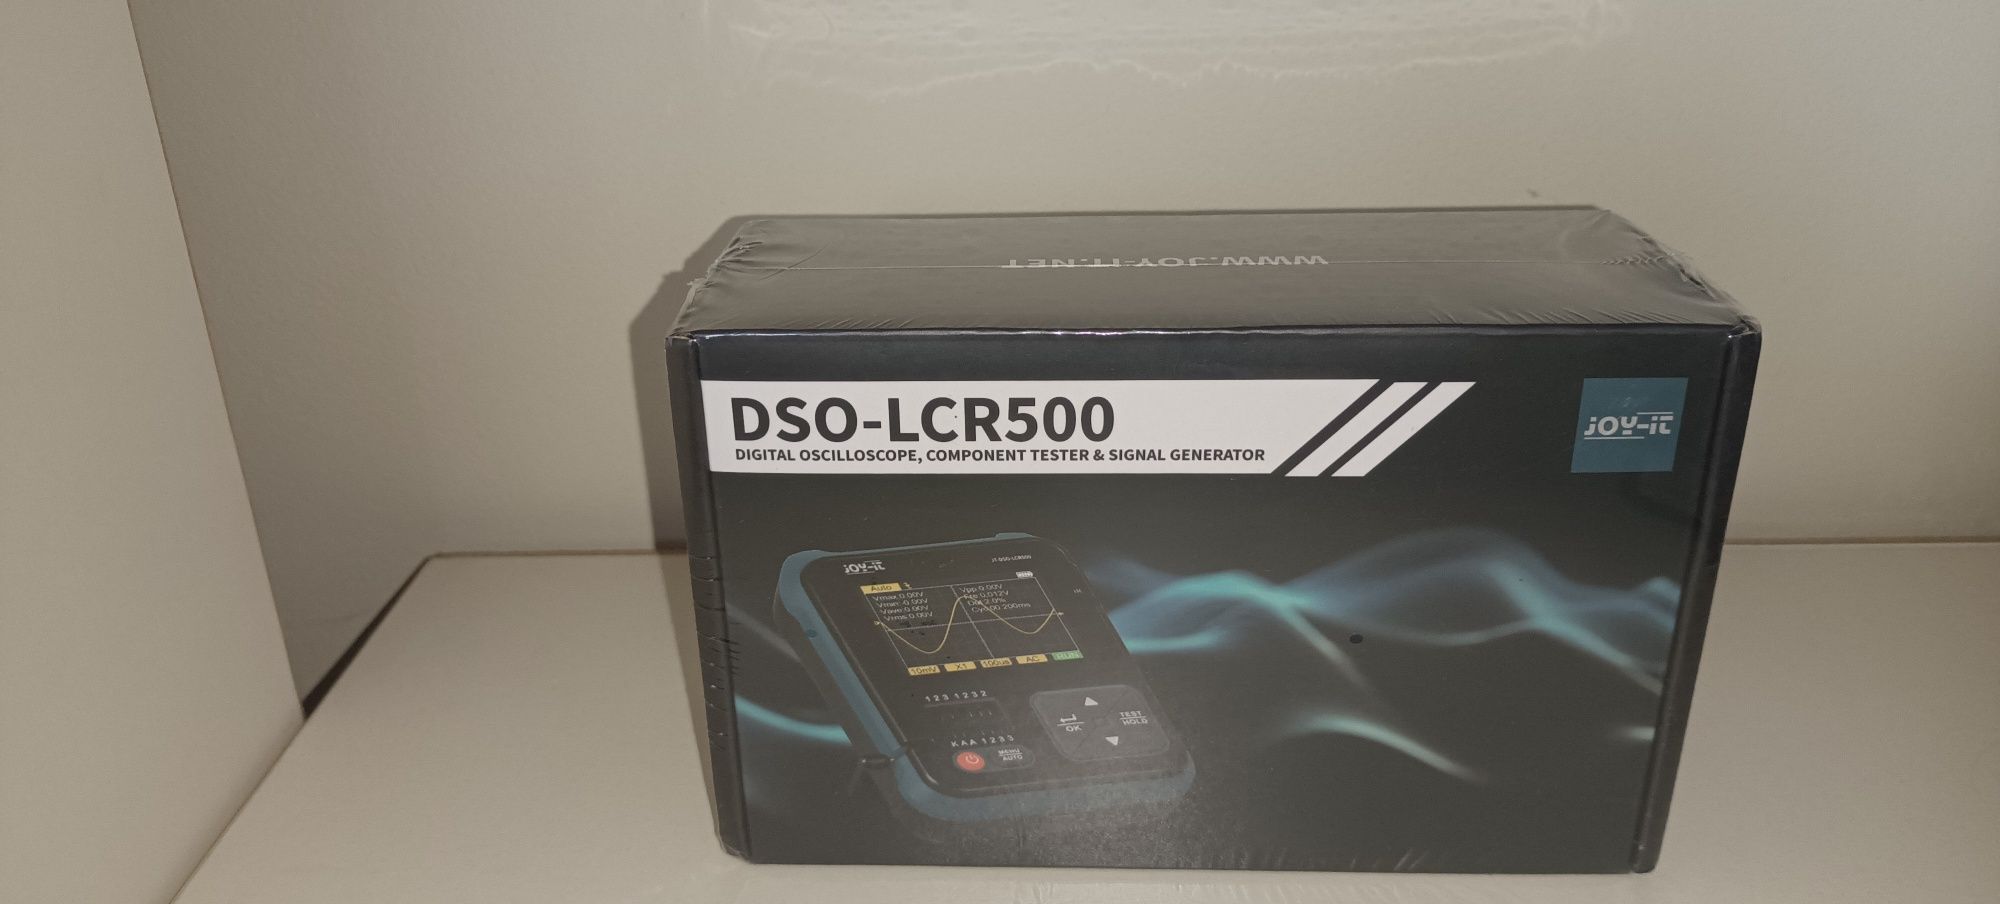 Цифровий осцилограф DSO-LCR500 JOY-IT